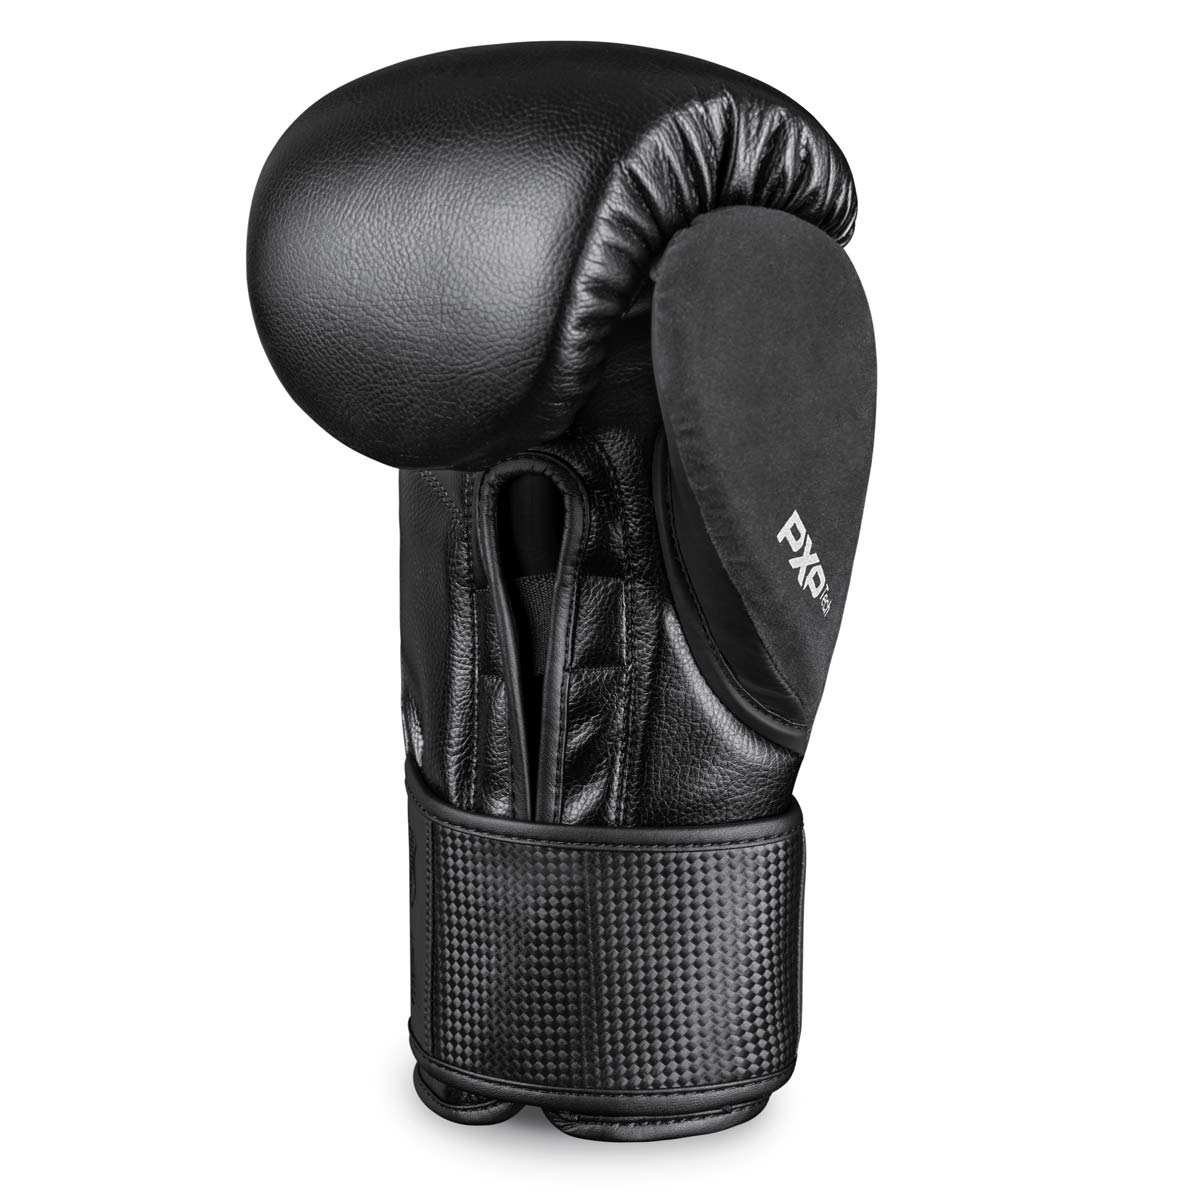 Die Phantom RIOT PRO Boxhandschuhe. Ideal für dein Kampfsport Training und Wettkämpfe. Perfekte Passform und überragende Qualität für Training und Sparring. Rechter Boxhandschuh.